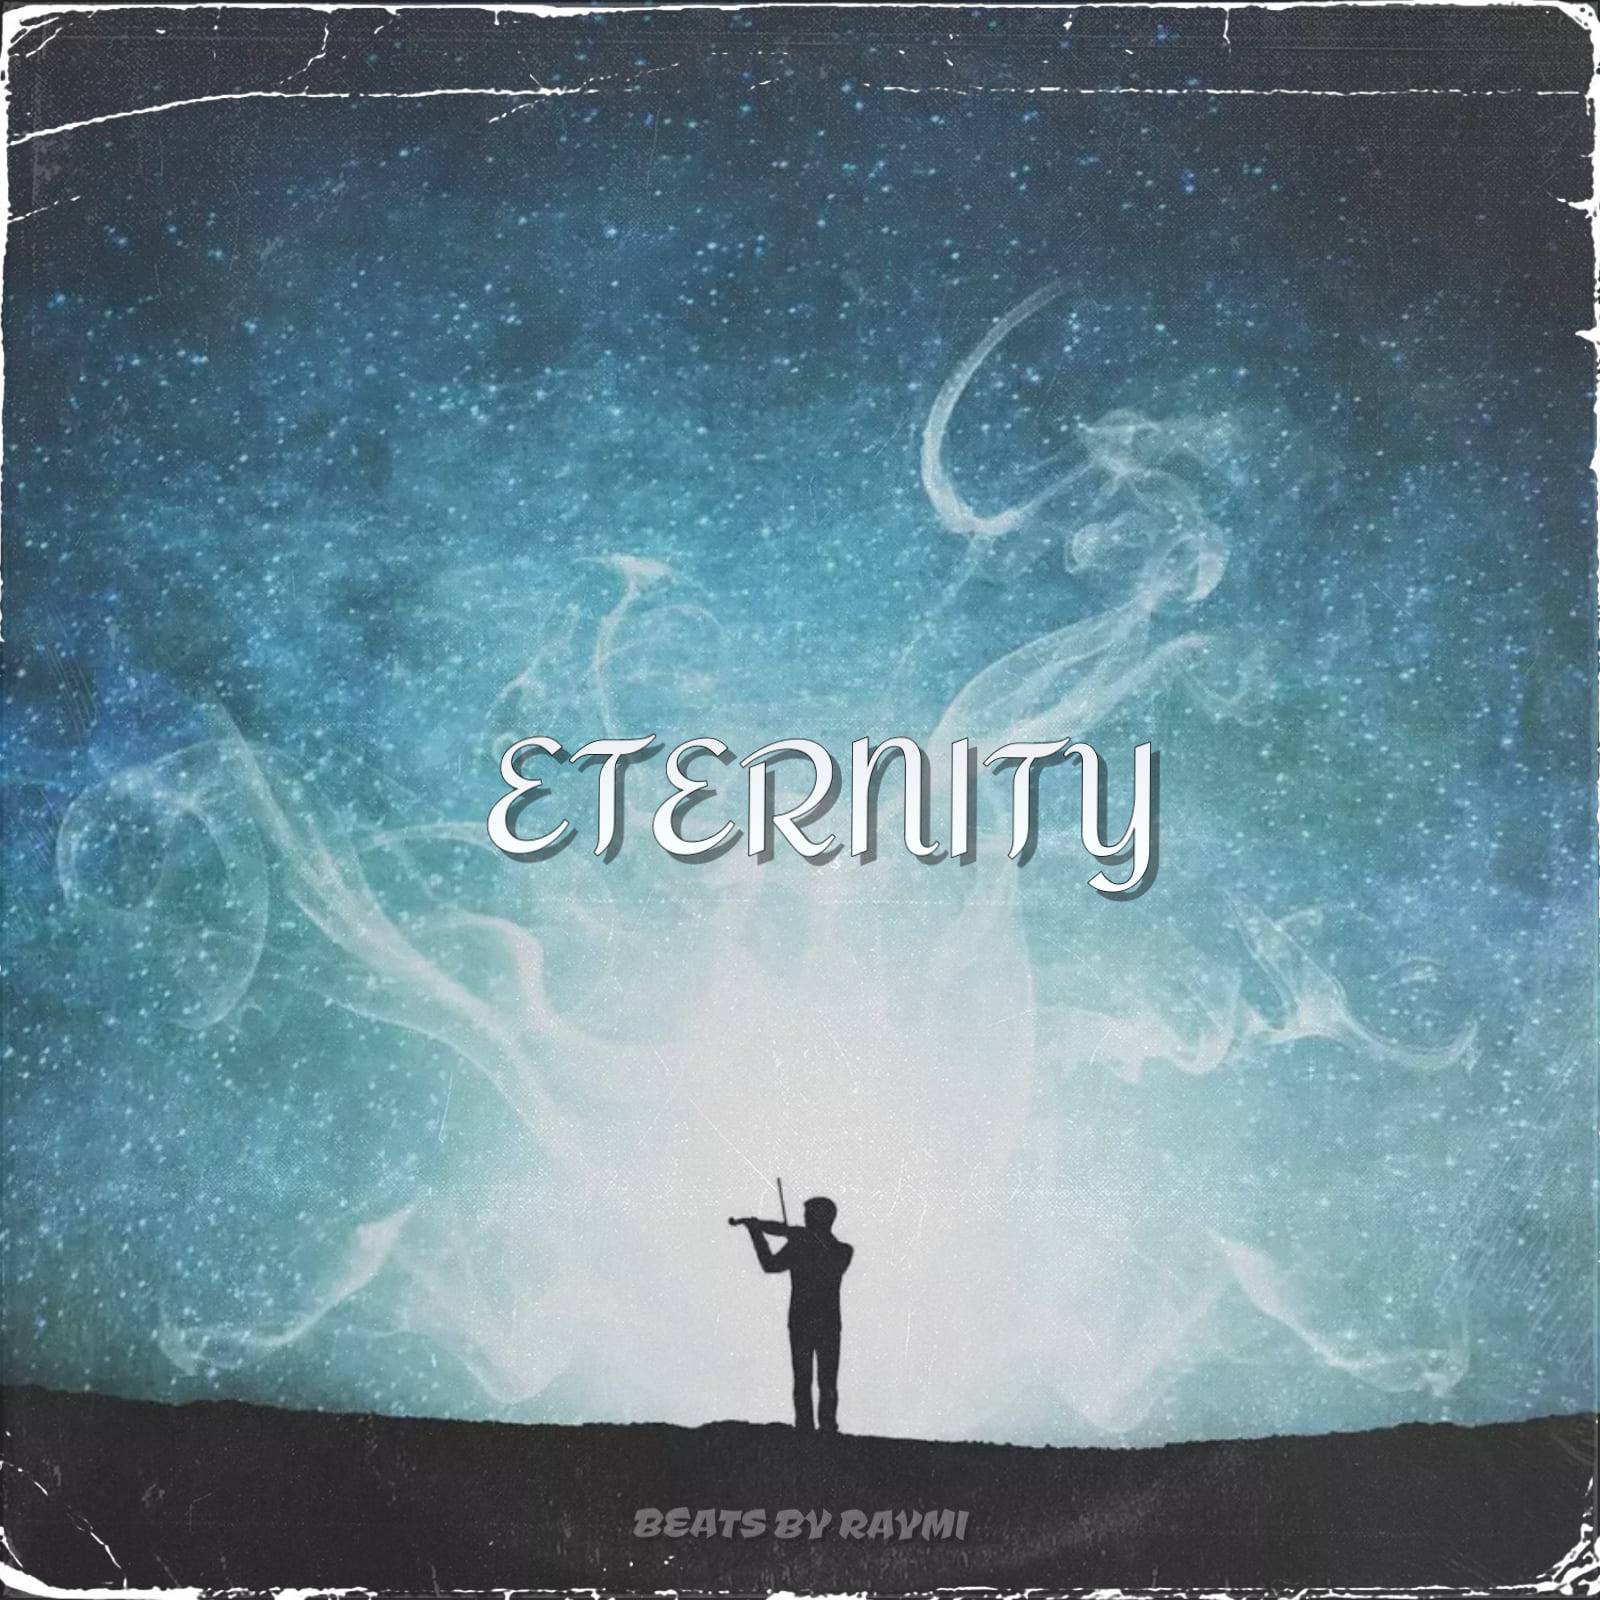 обложка бита, Raymi, музыка, cover, Eternity (красивый, гитарный бит с саксофоном)